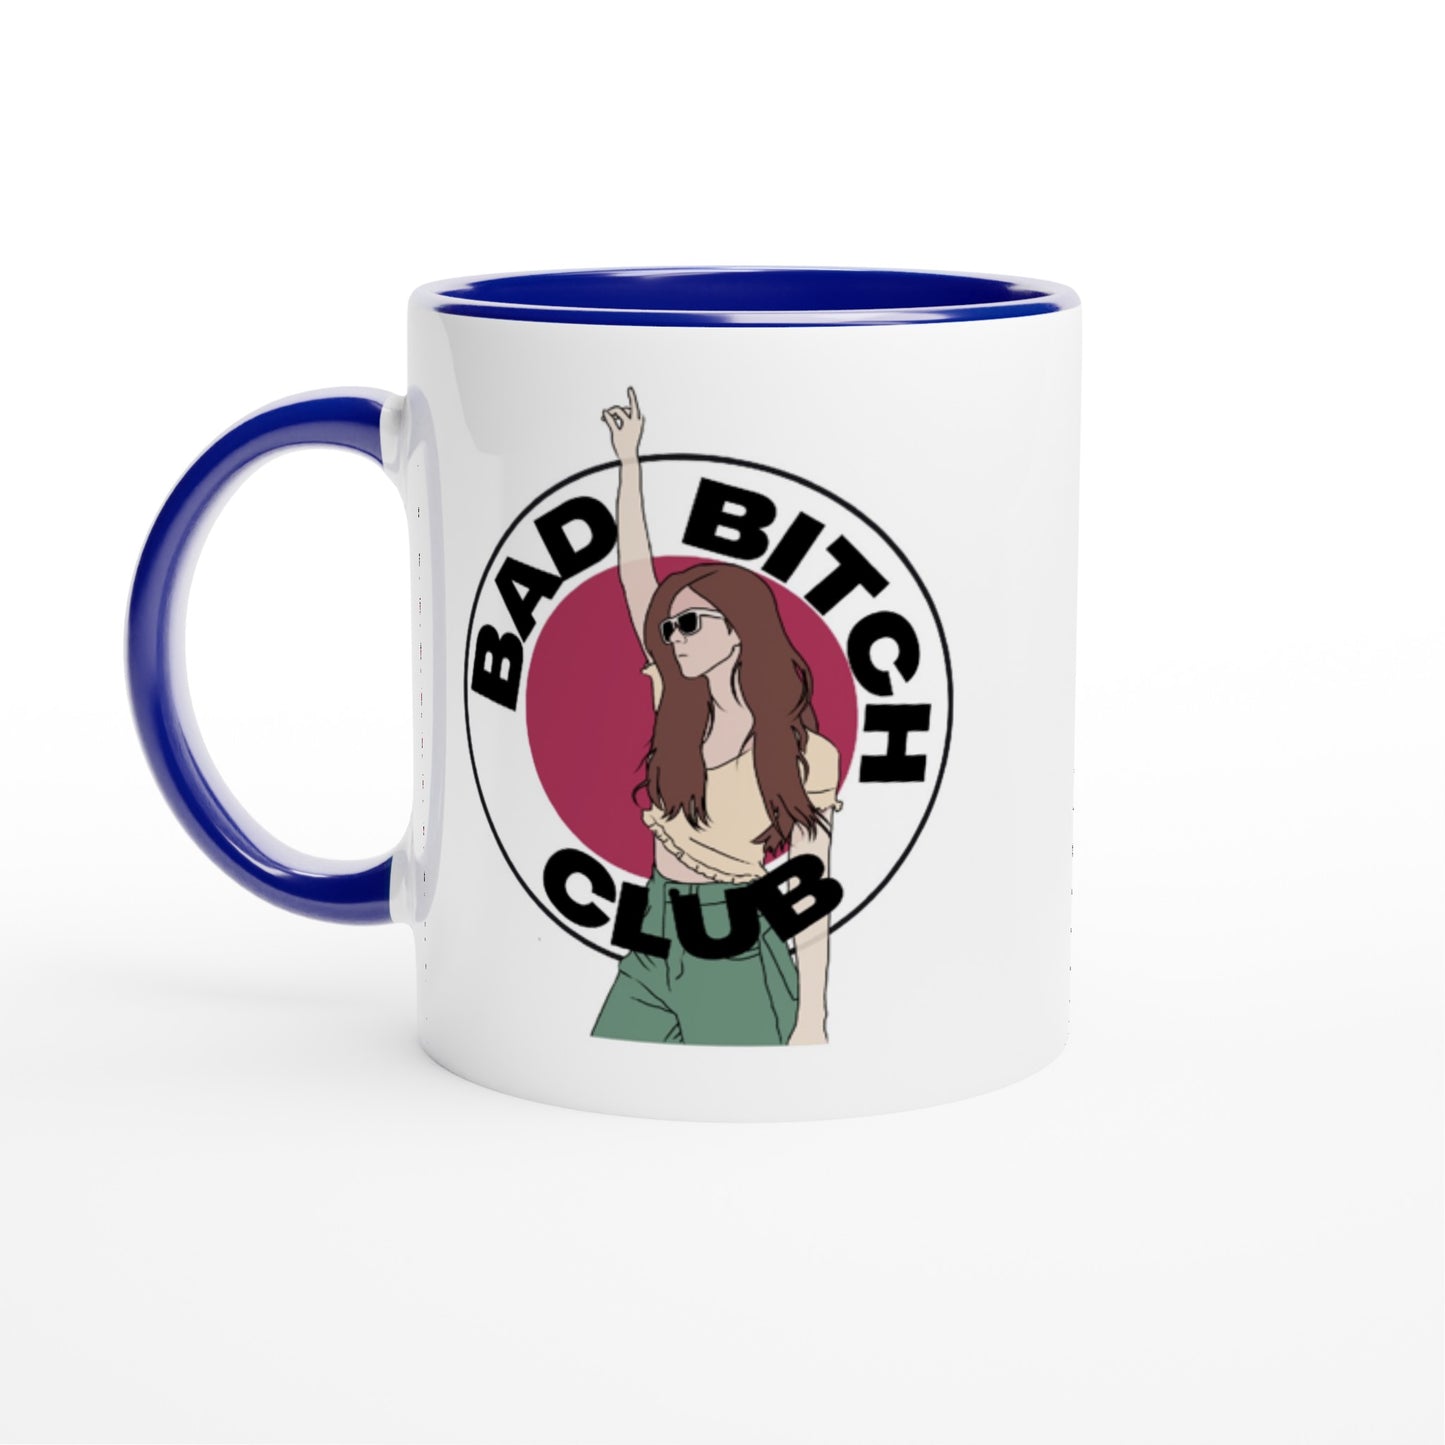 Bad Bitch Club - White 11oz Ceramic Mug with Color Inside